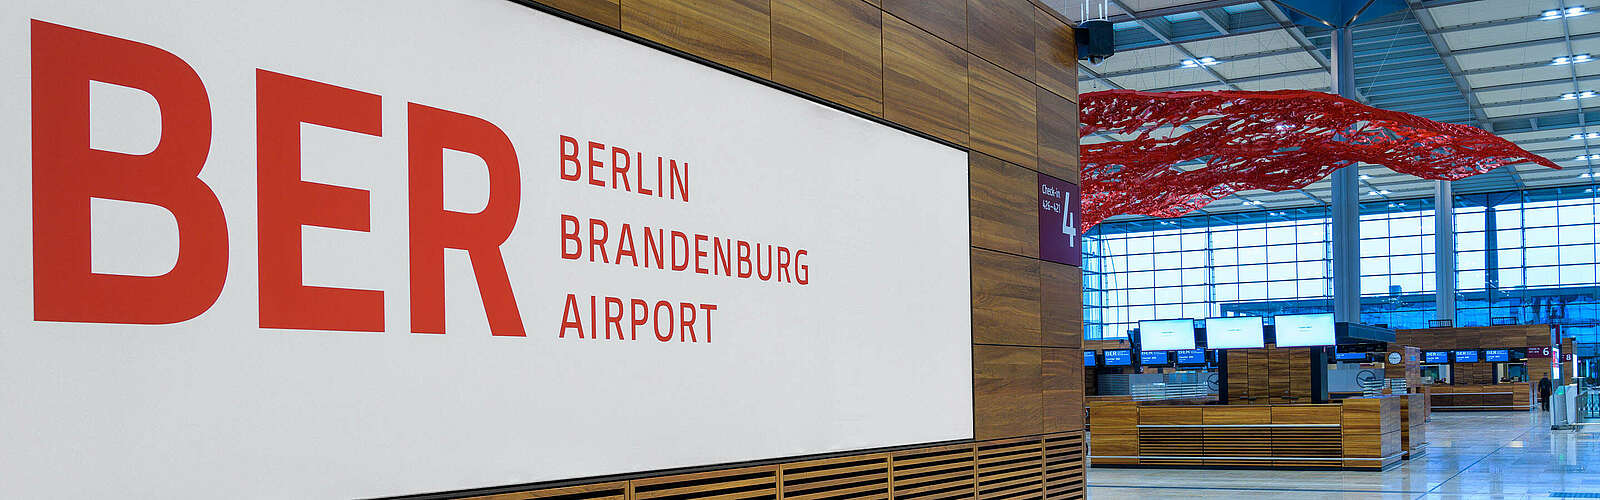 BER Flughafen Berlin Brandenburg Terminal 1,
        
    

        Foto: Flughafen Berlin Brandenburg GmbH/Günter Wicker